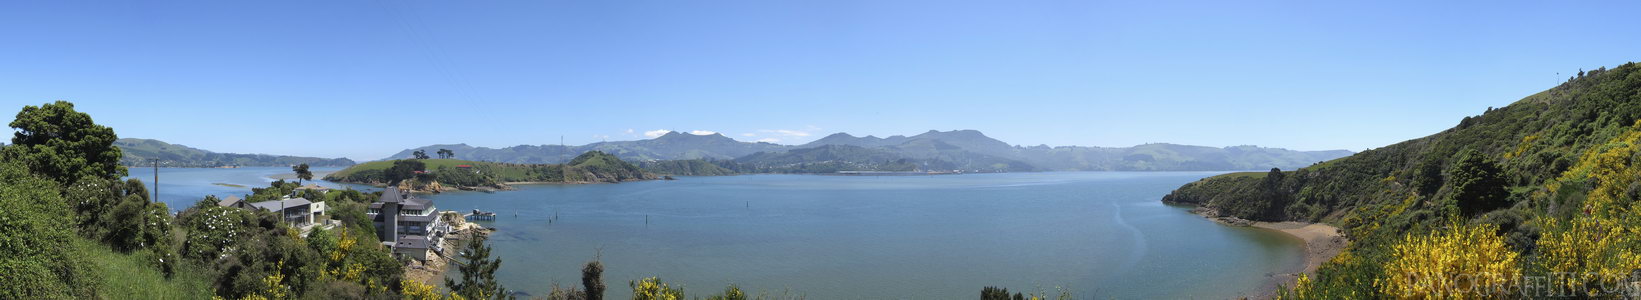 Otago Peninsula Aquarium - Stitched Panorama